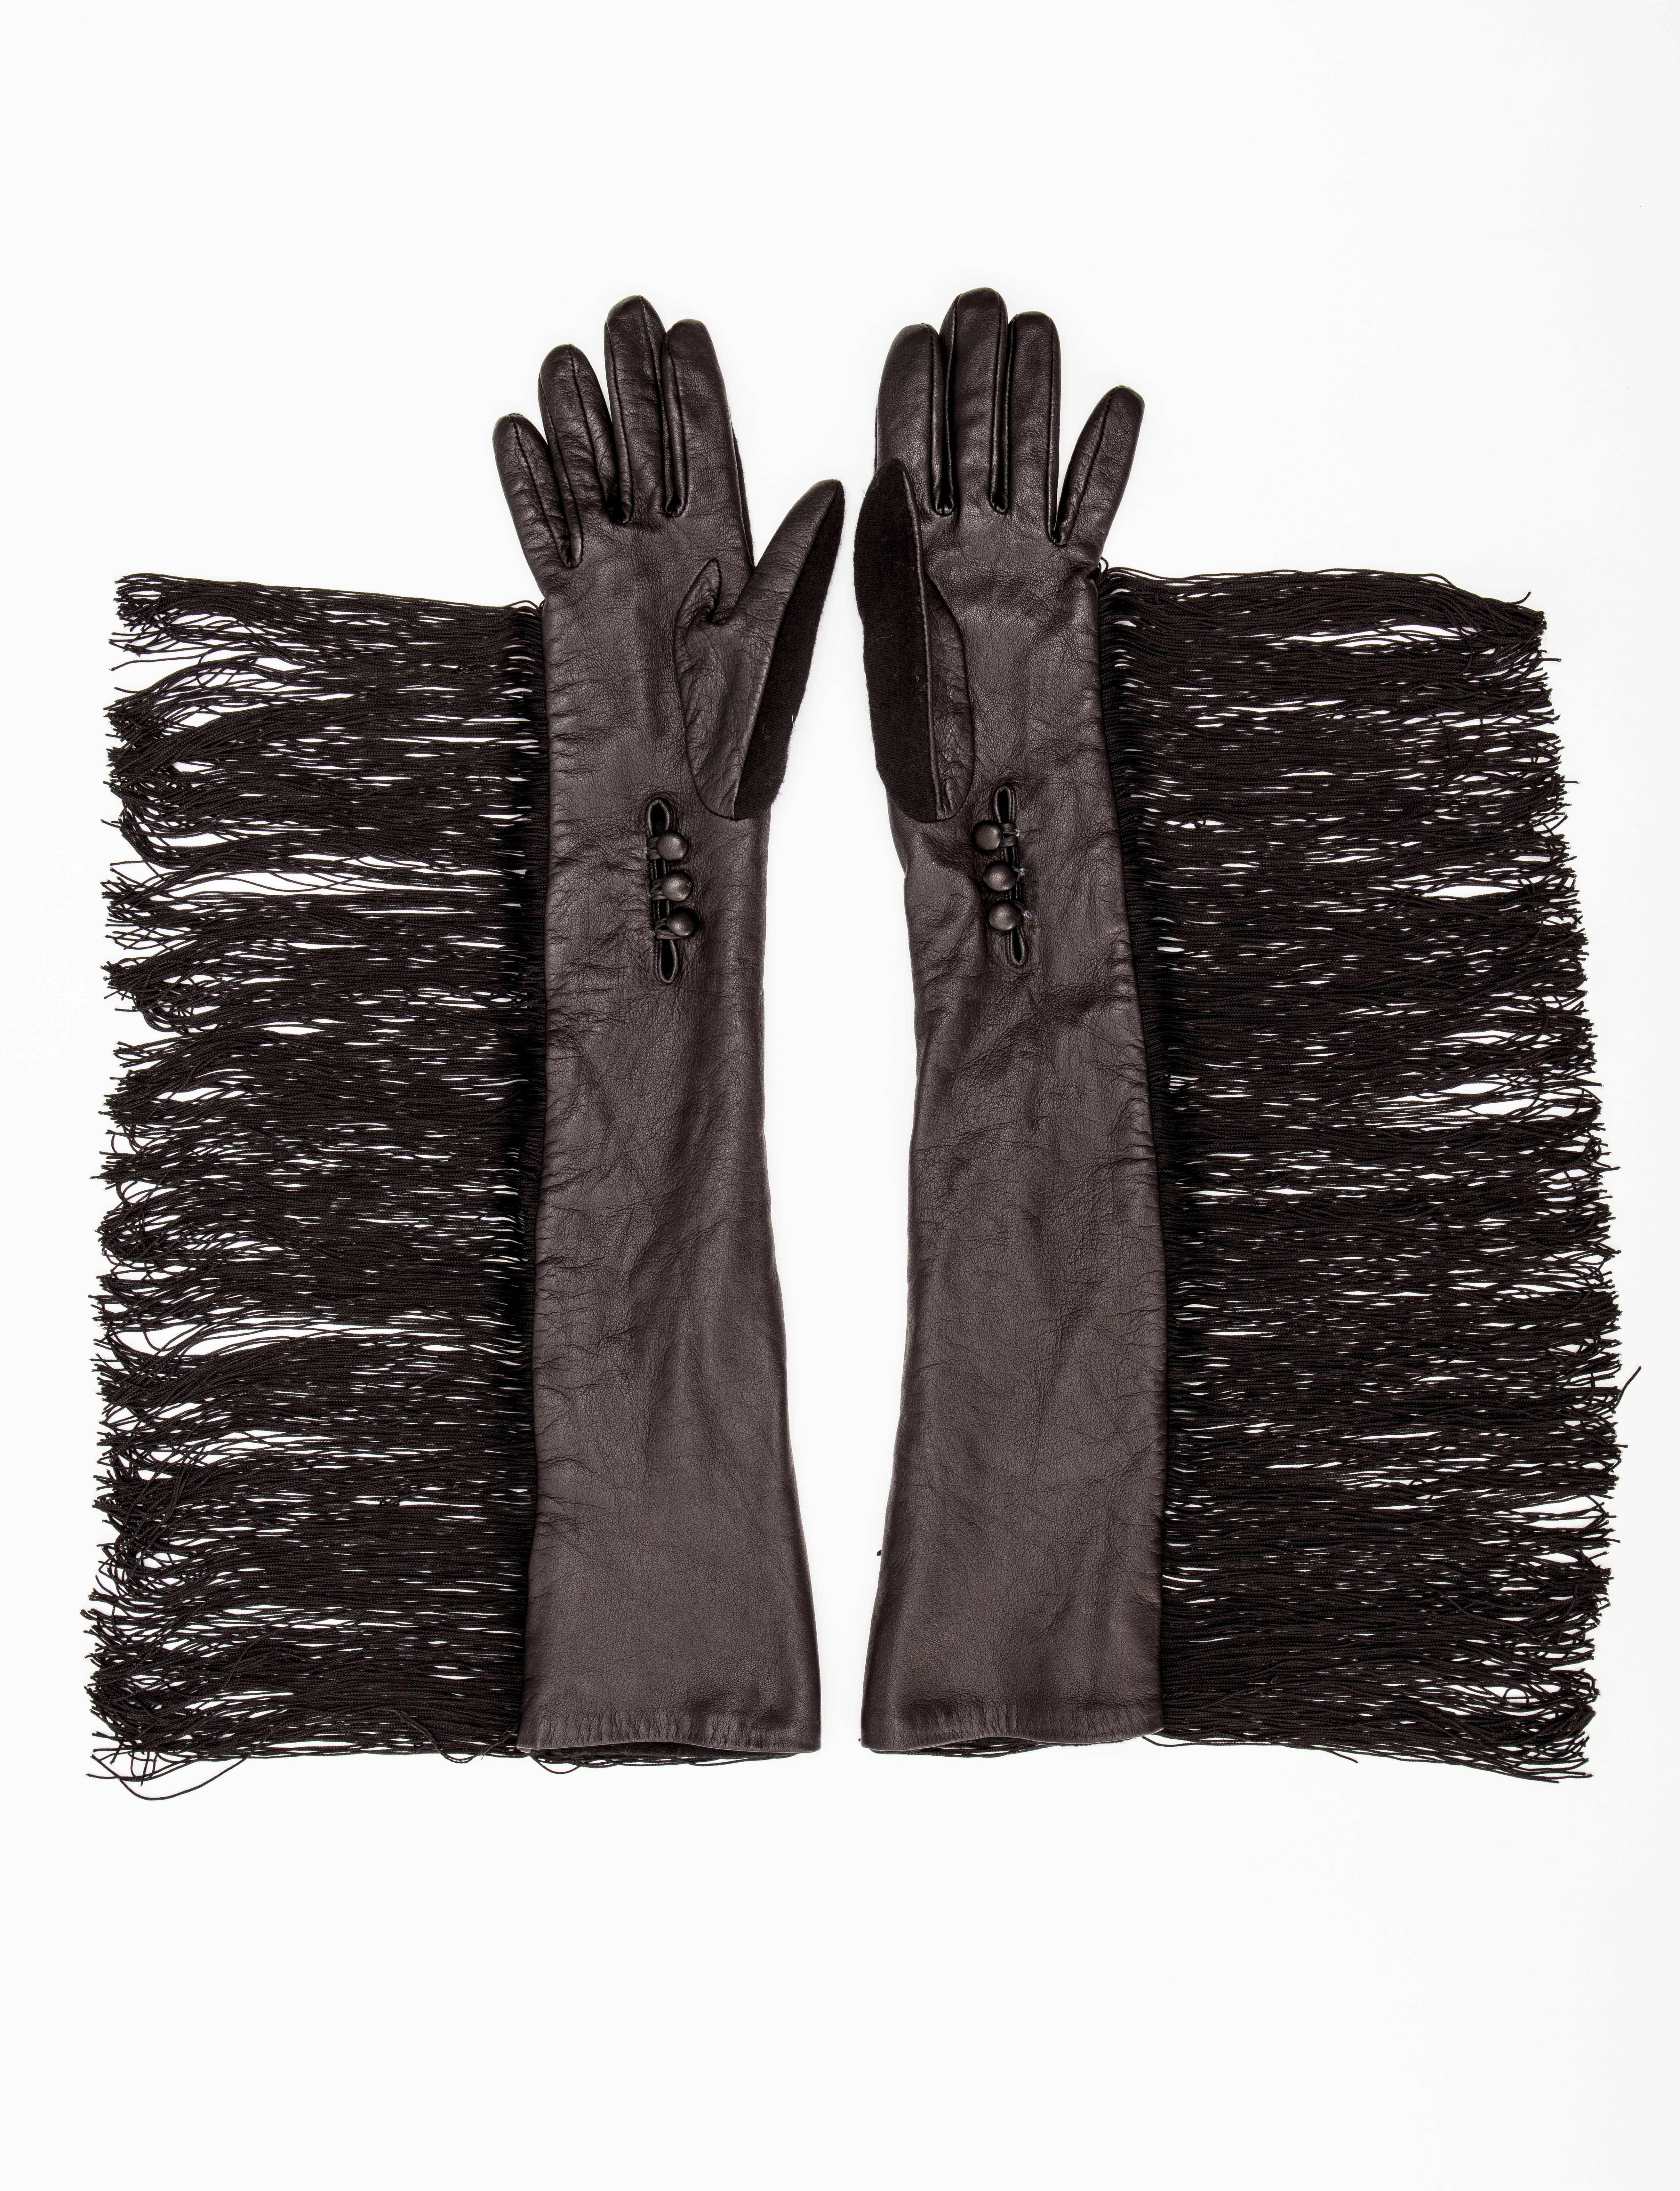 Alber Elbaz for Lanvin Long Black Leather Fringe Gloves, Fall 2014 (Schwarz)